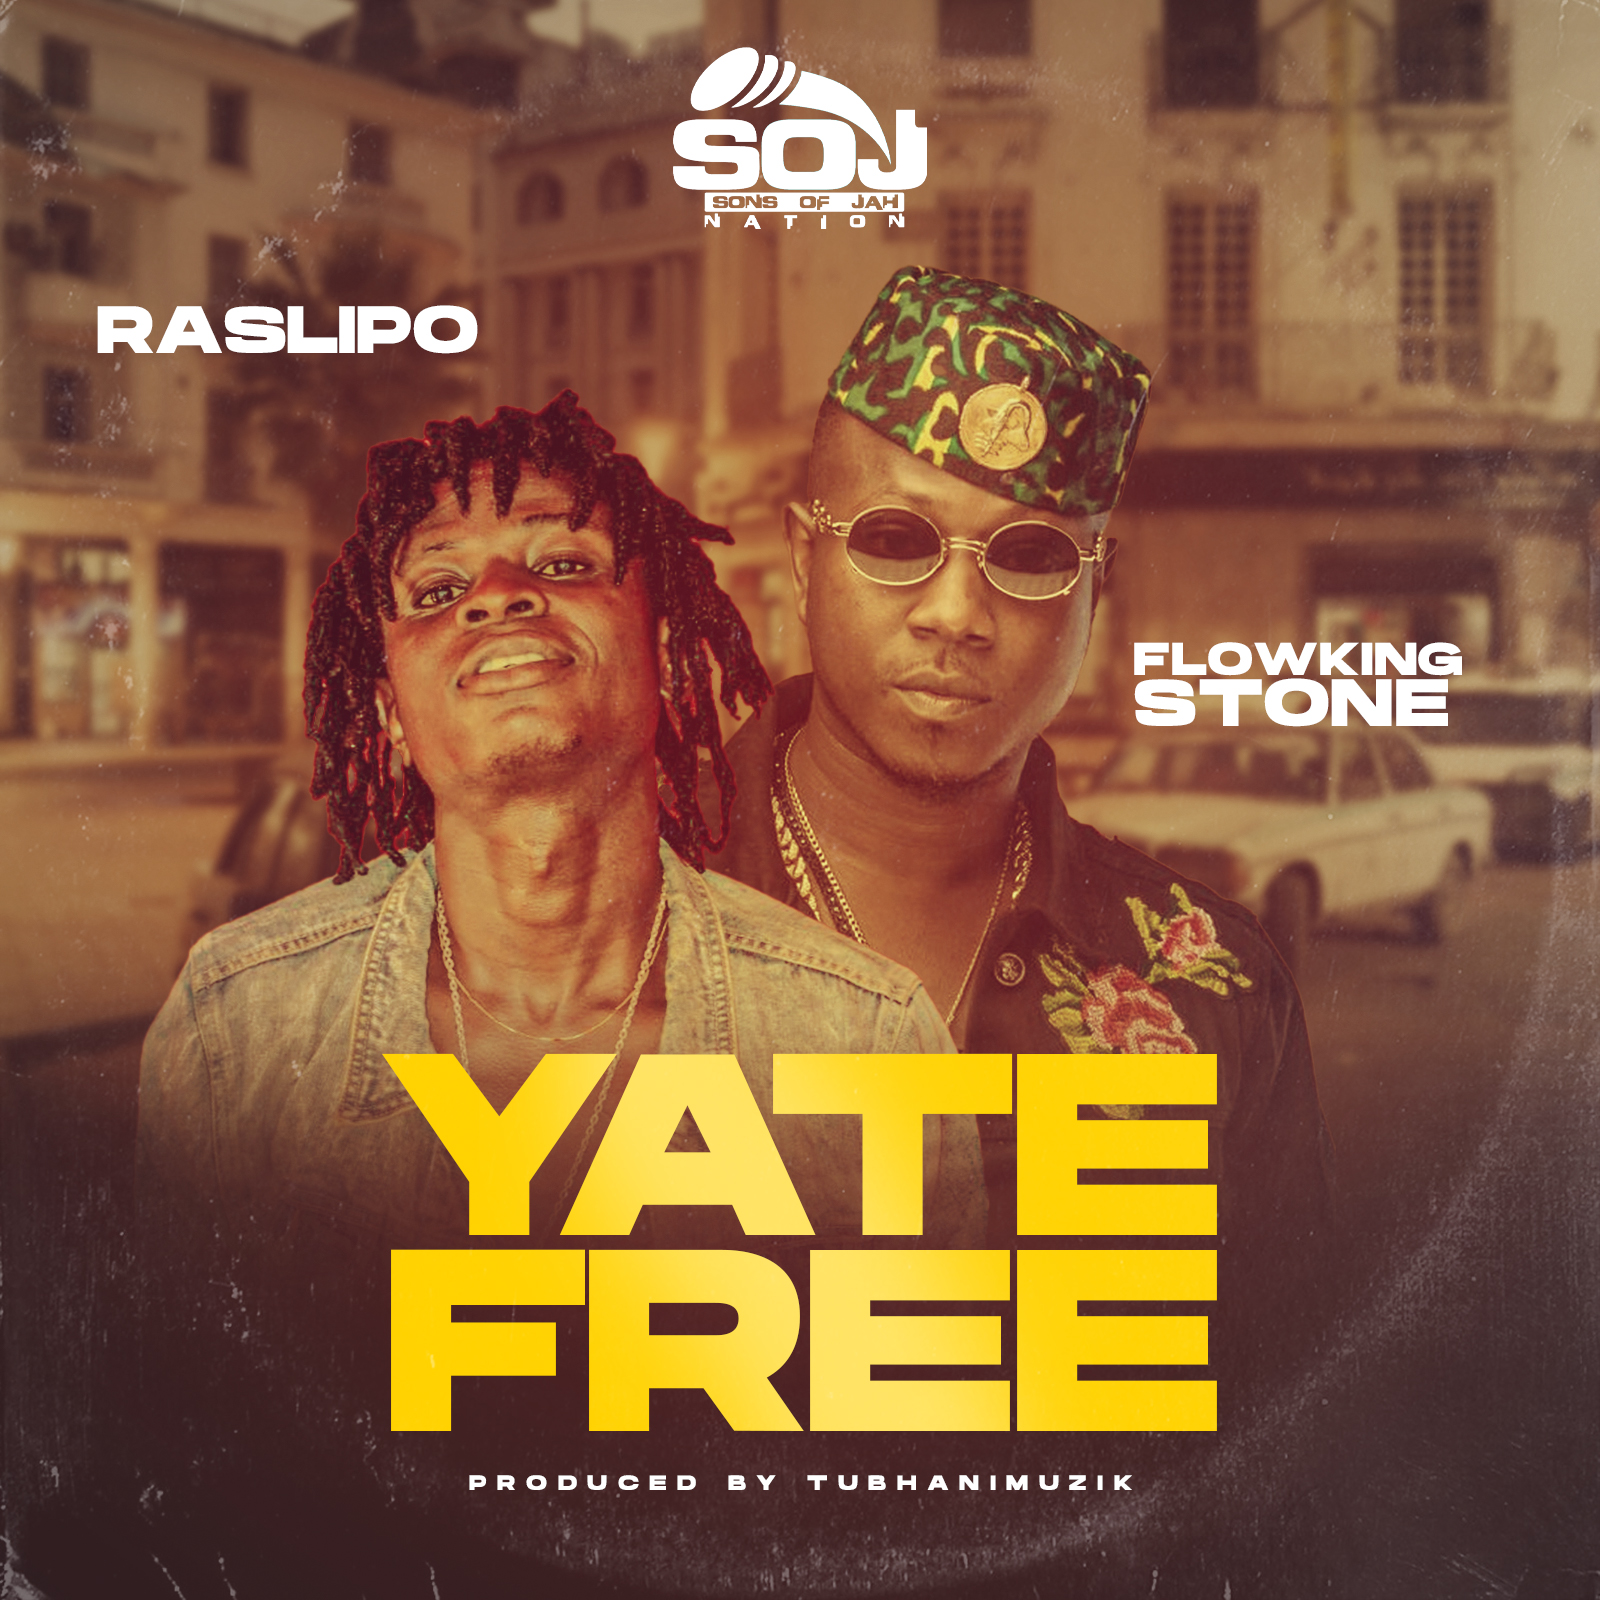 Ras Lipo Yate Free